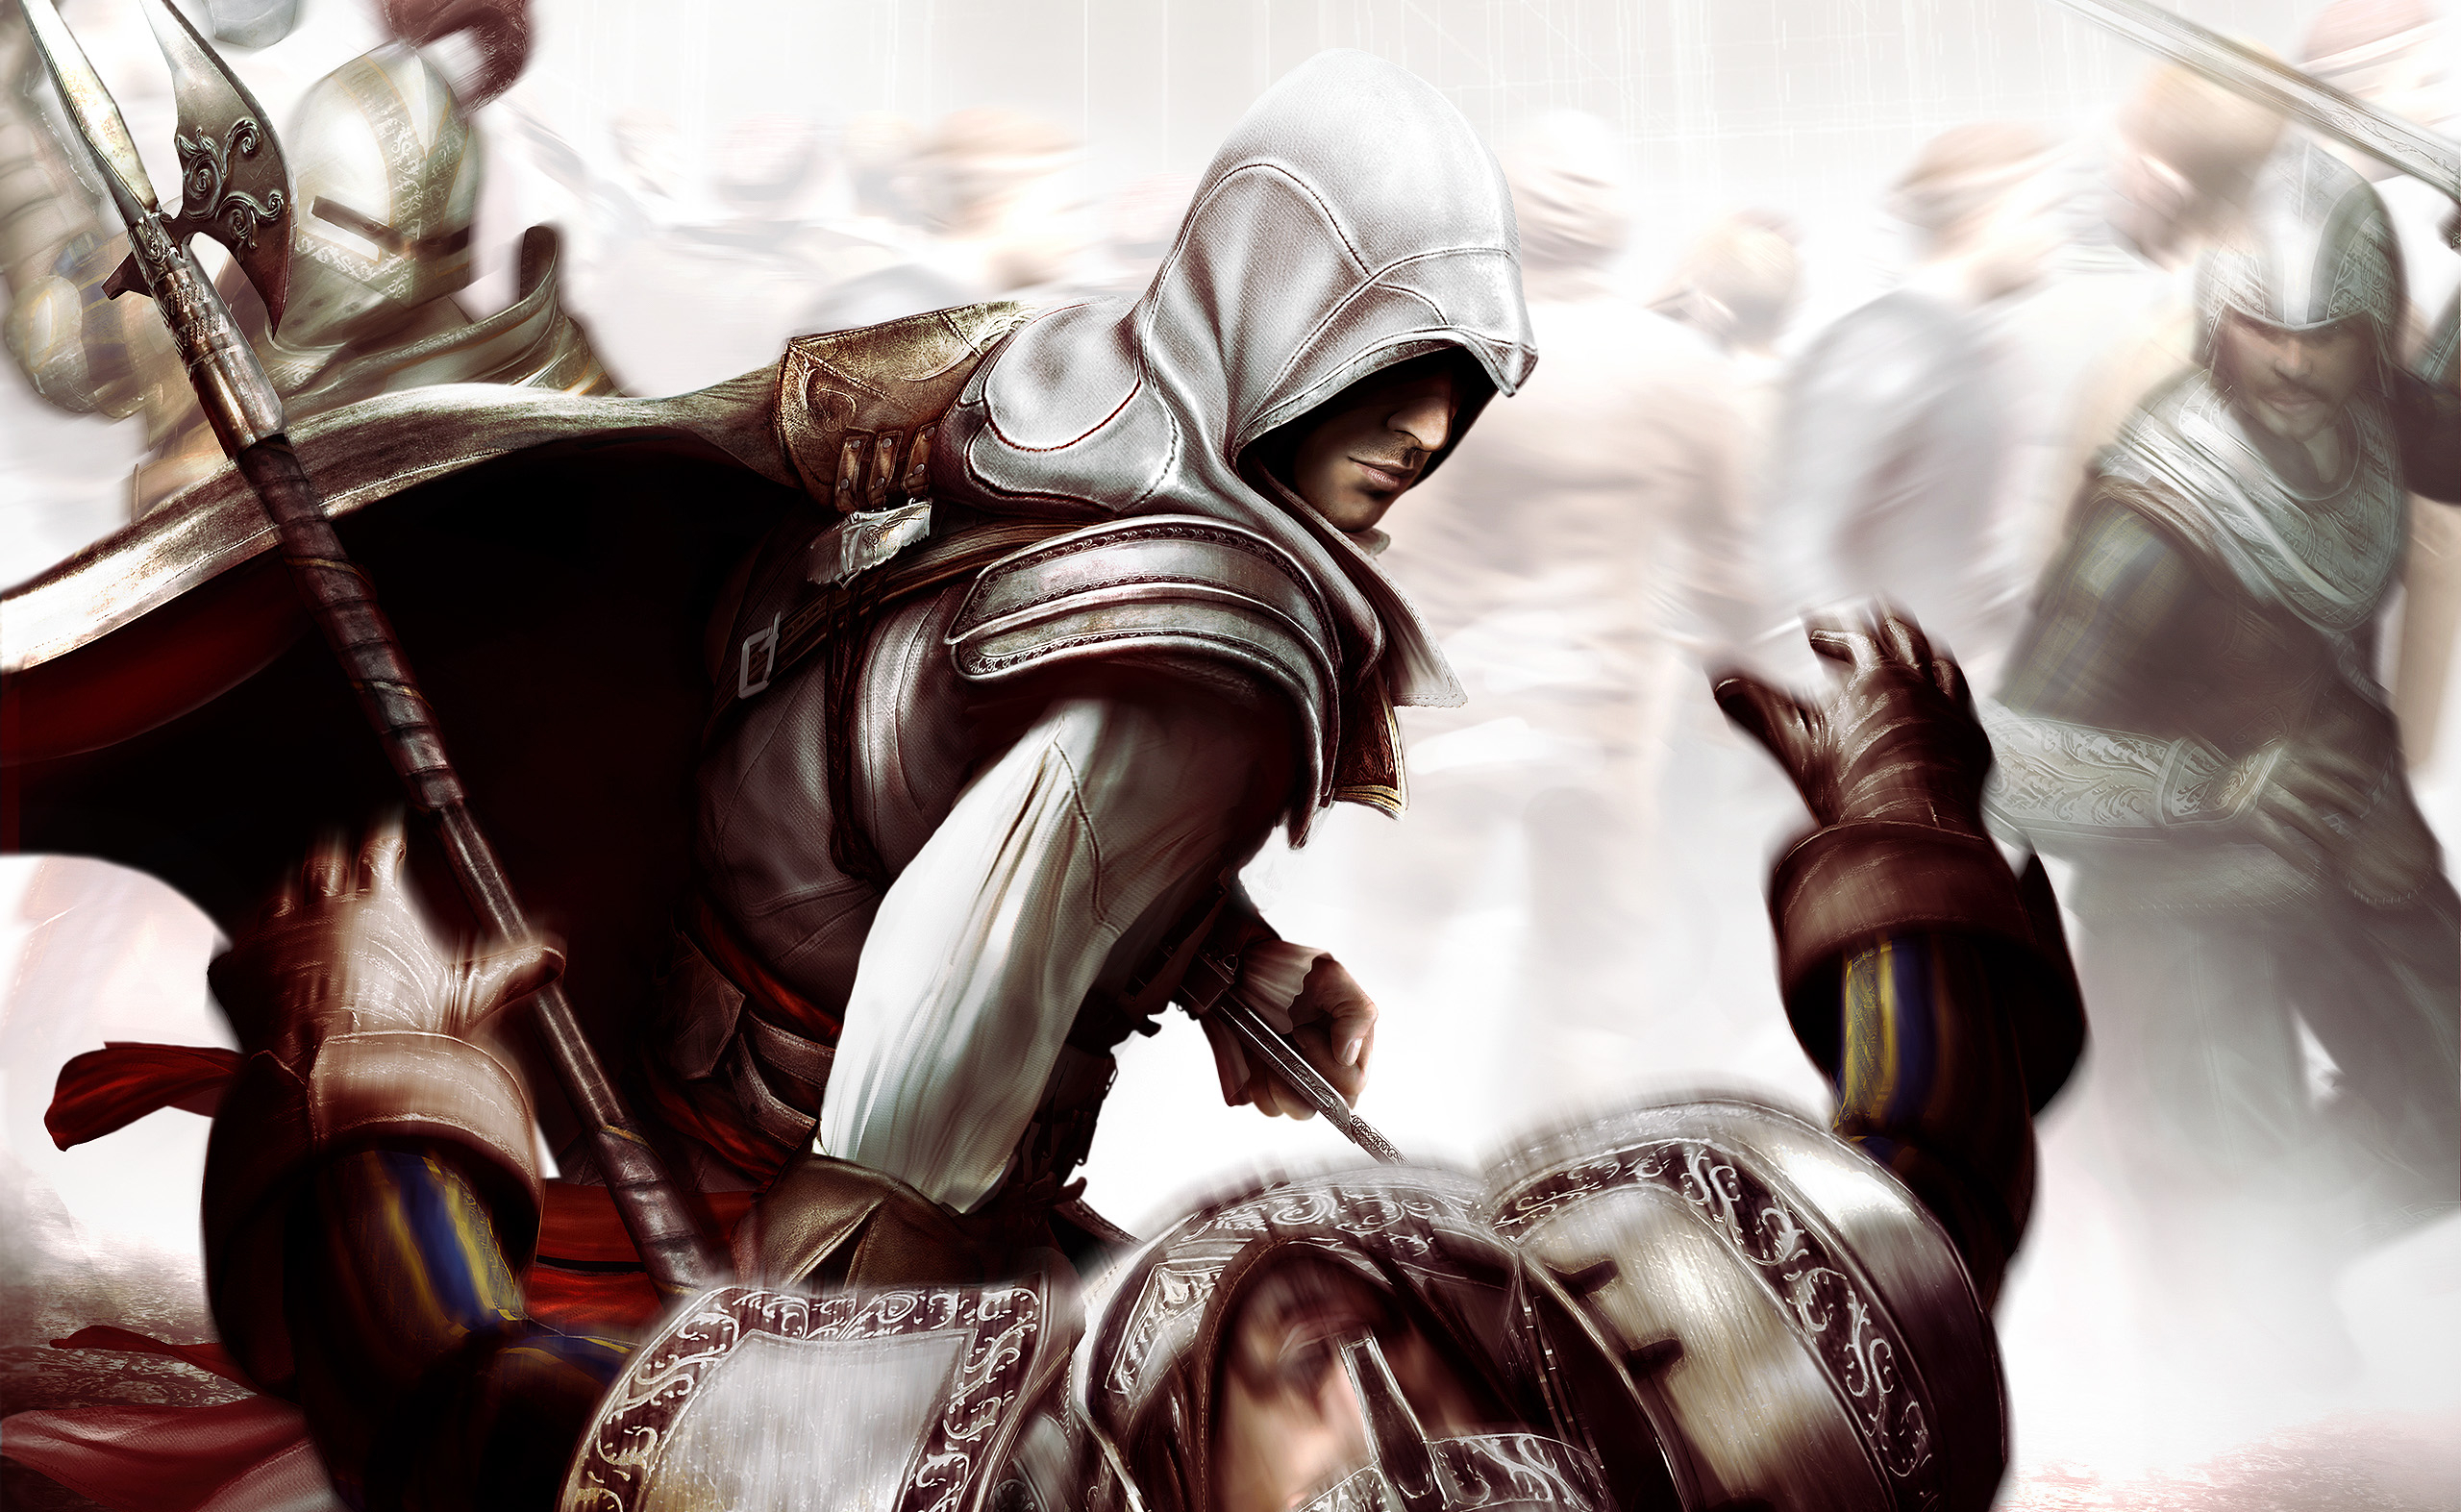 Assassin's Creed II desktop wallpaper - immersive video game scene.